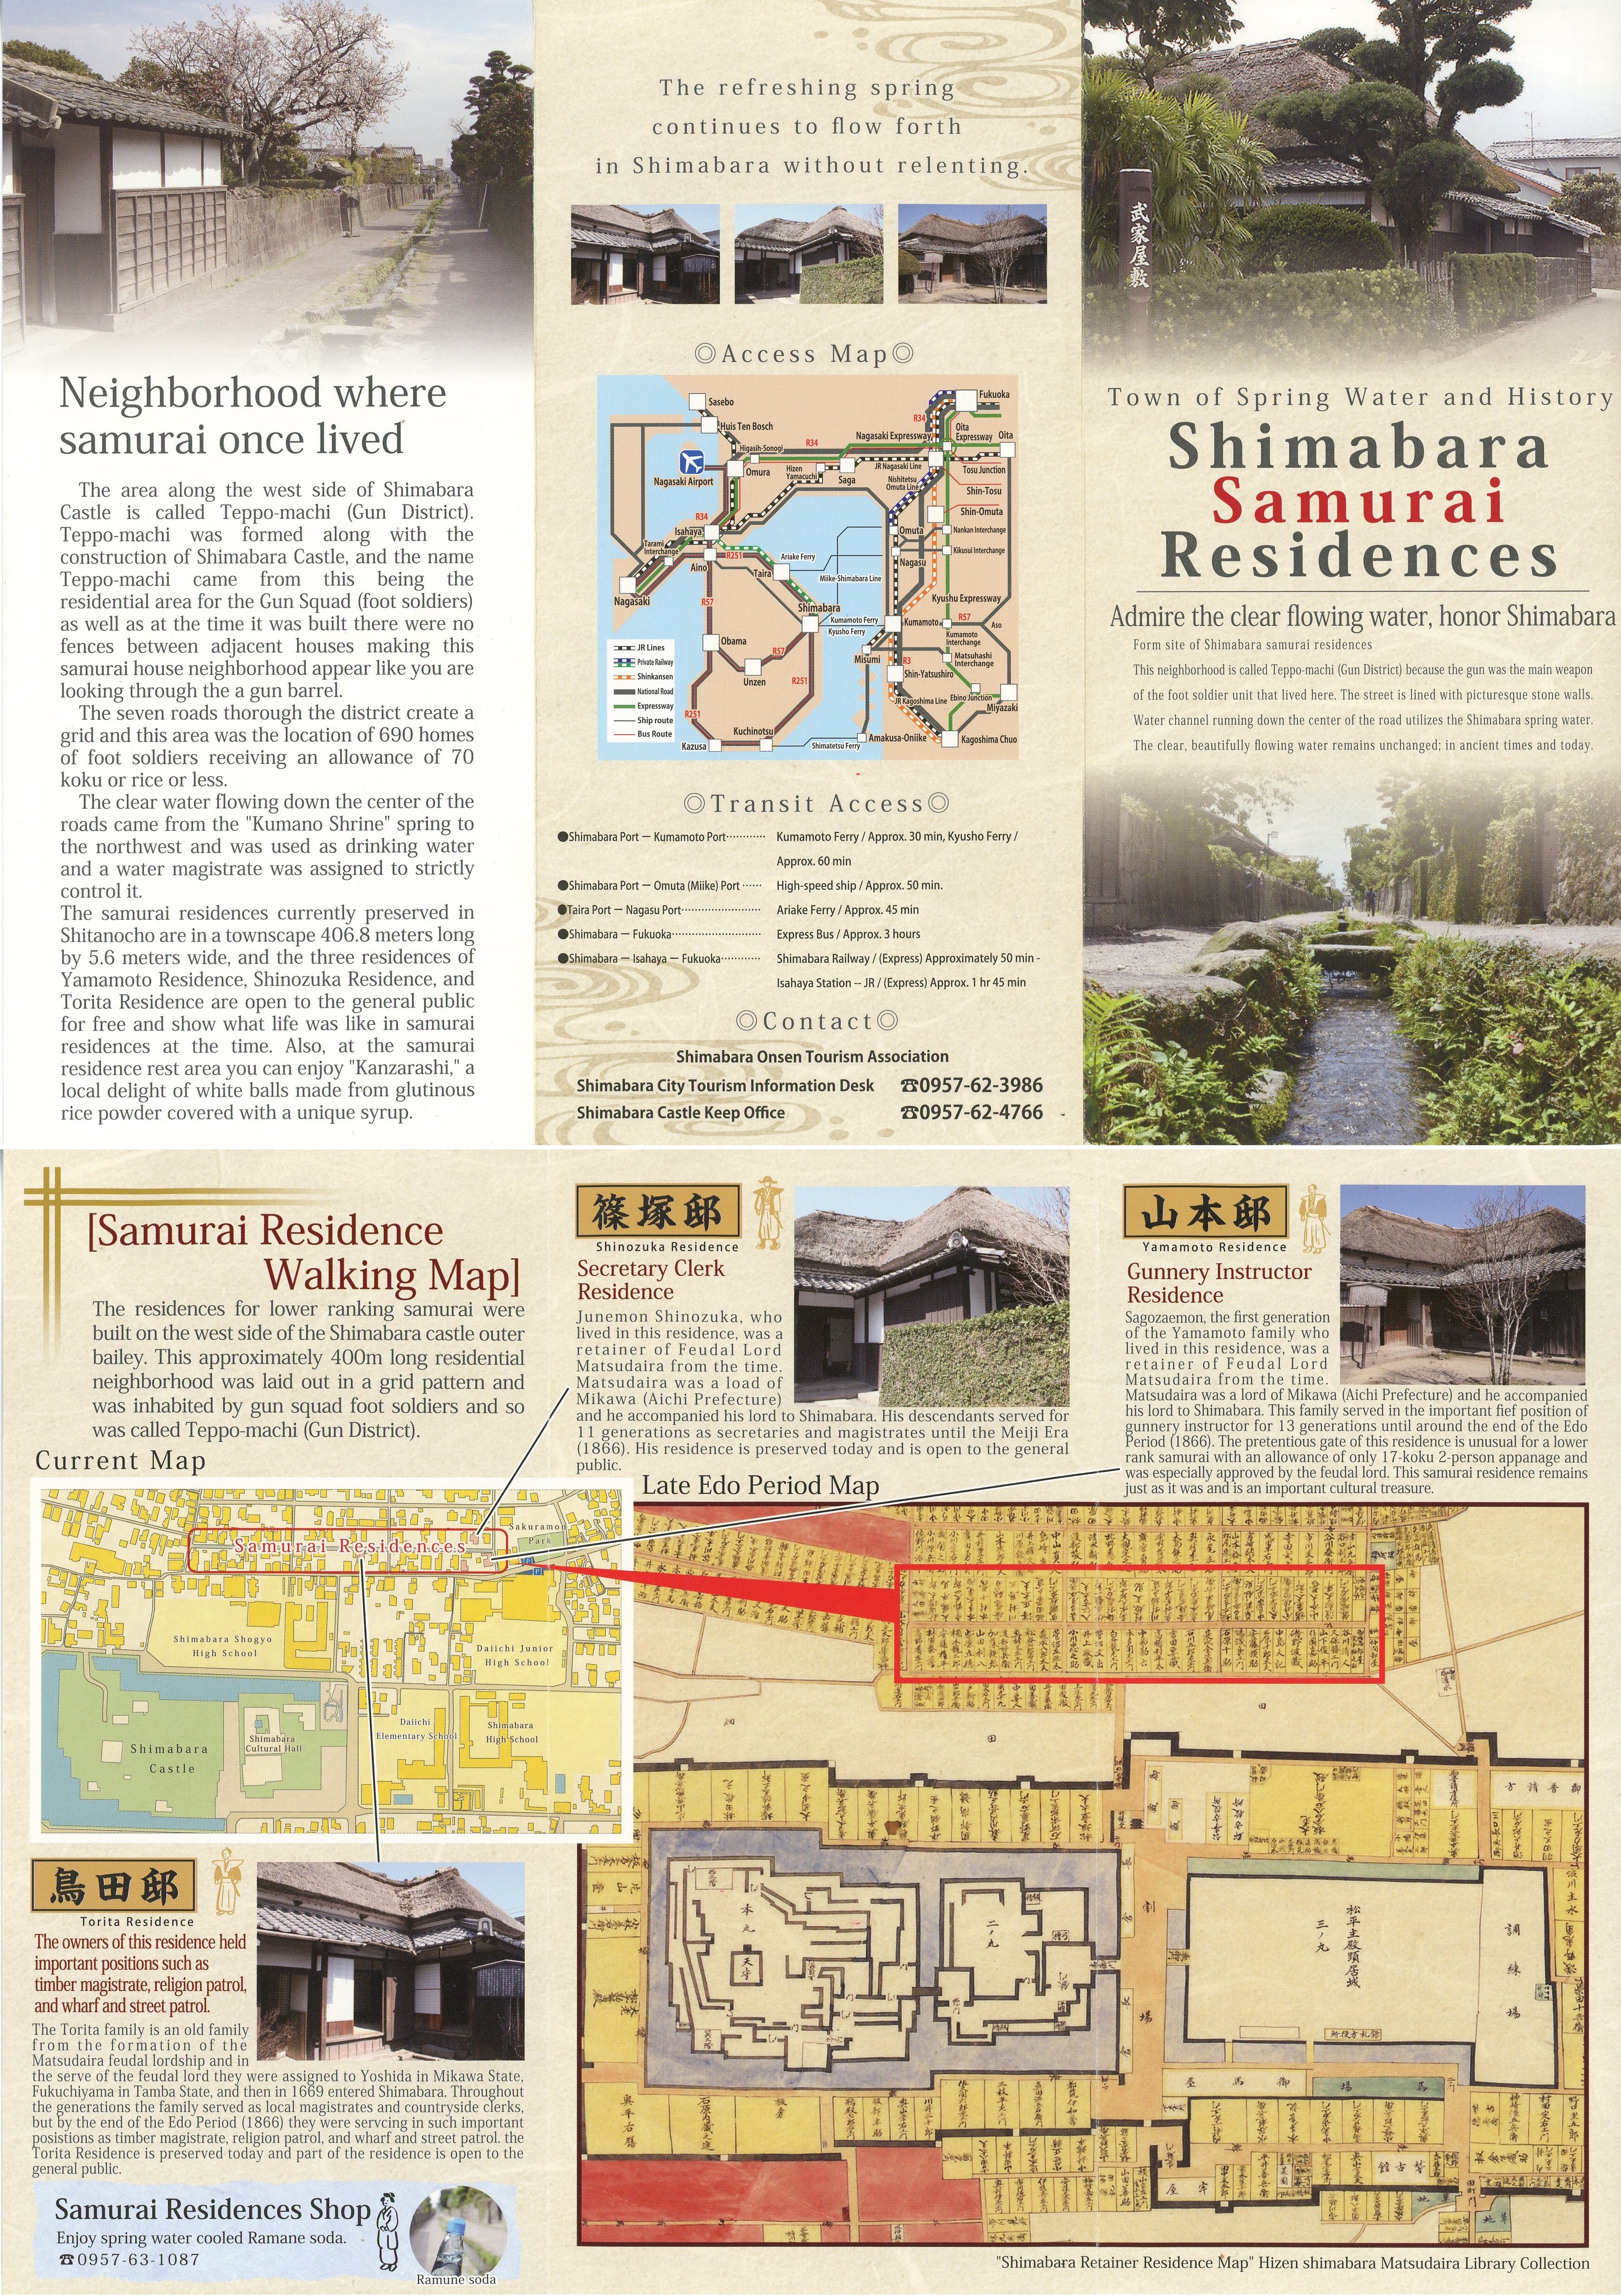 Shimabara Samurai Residences